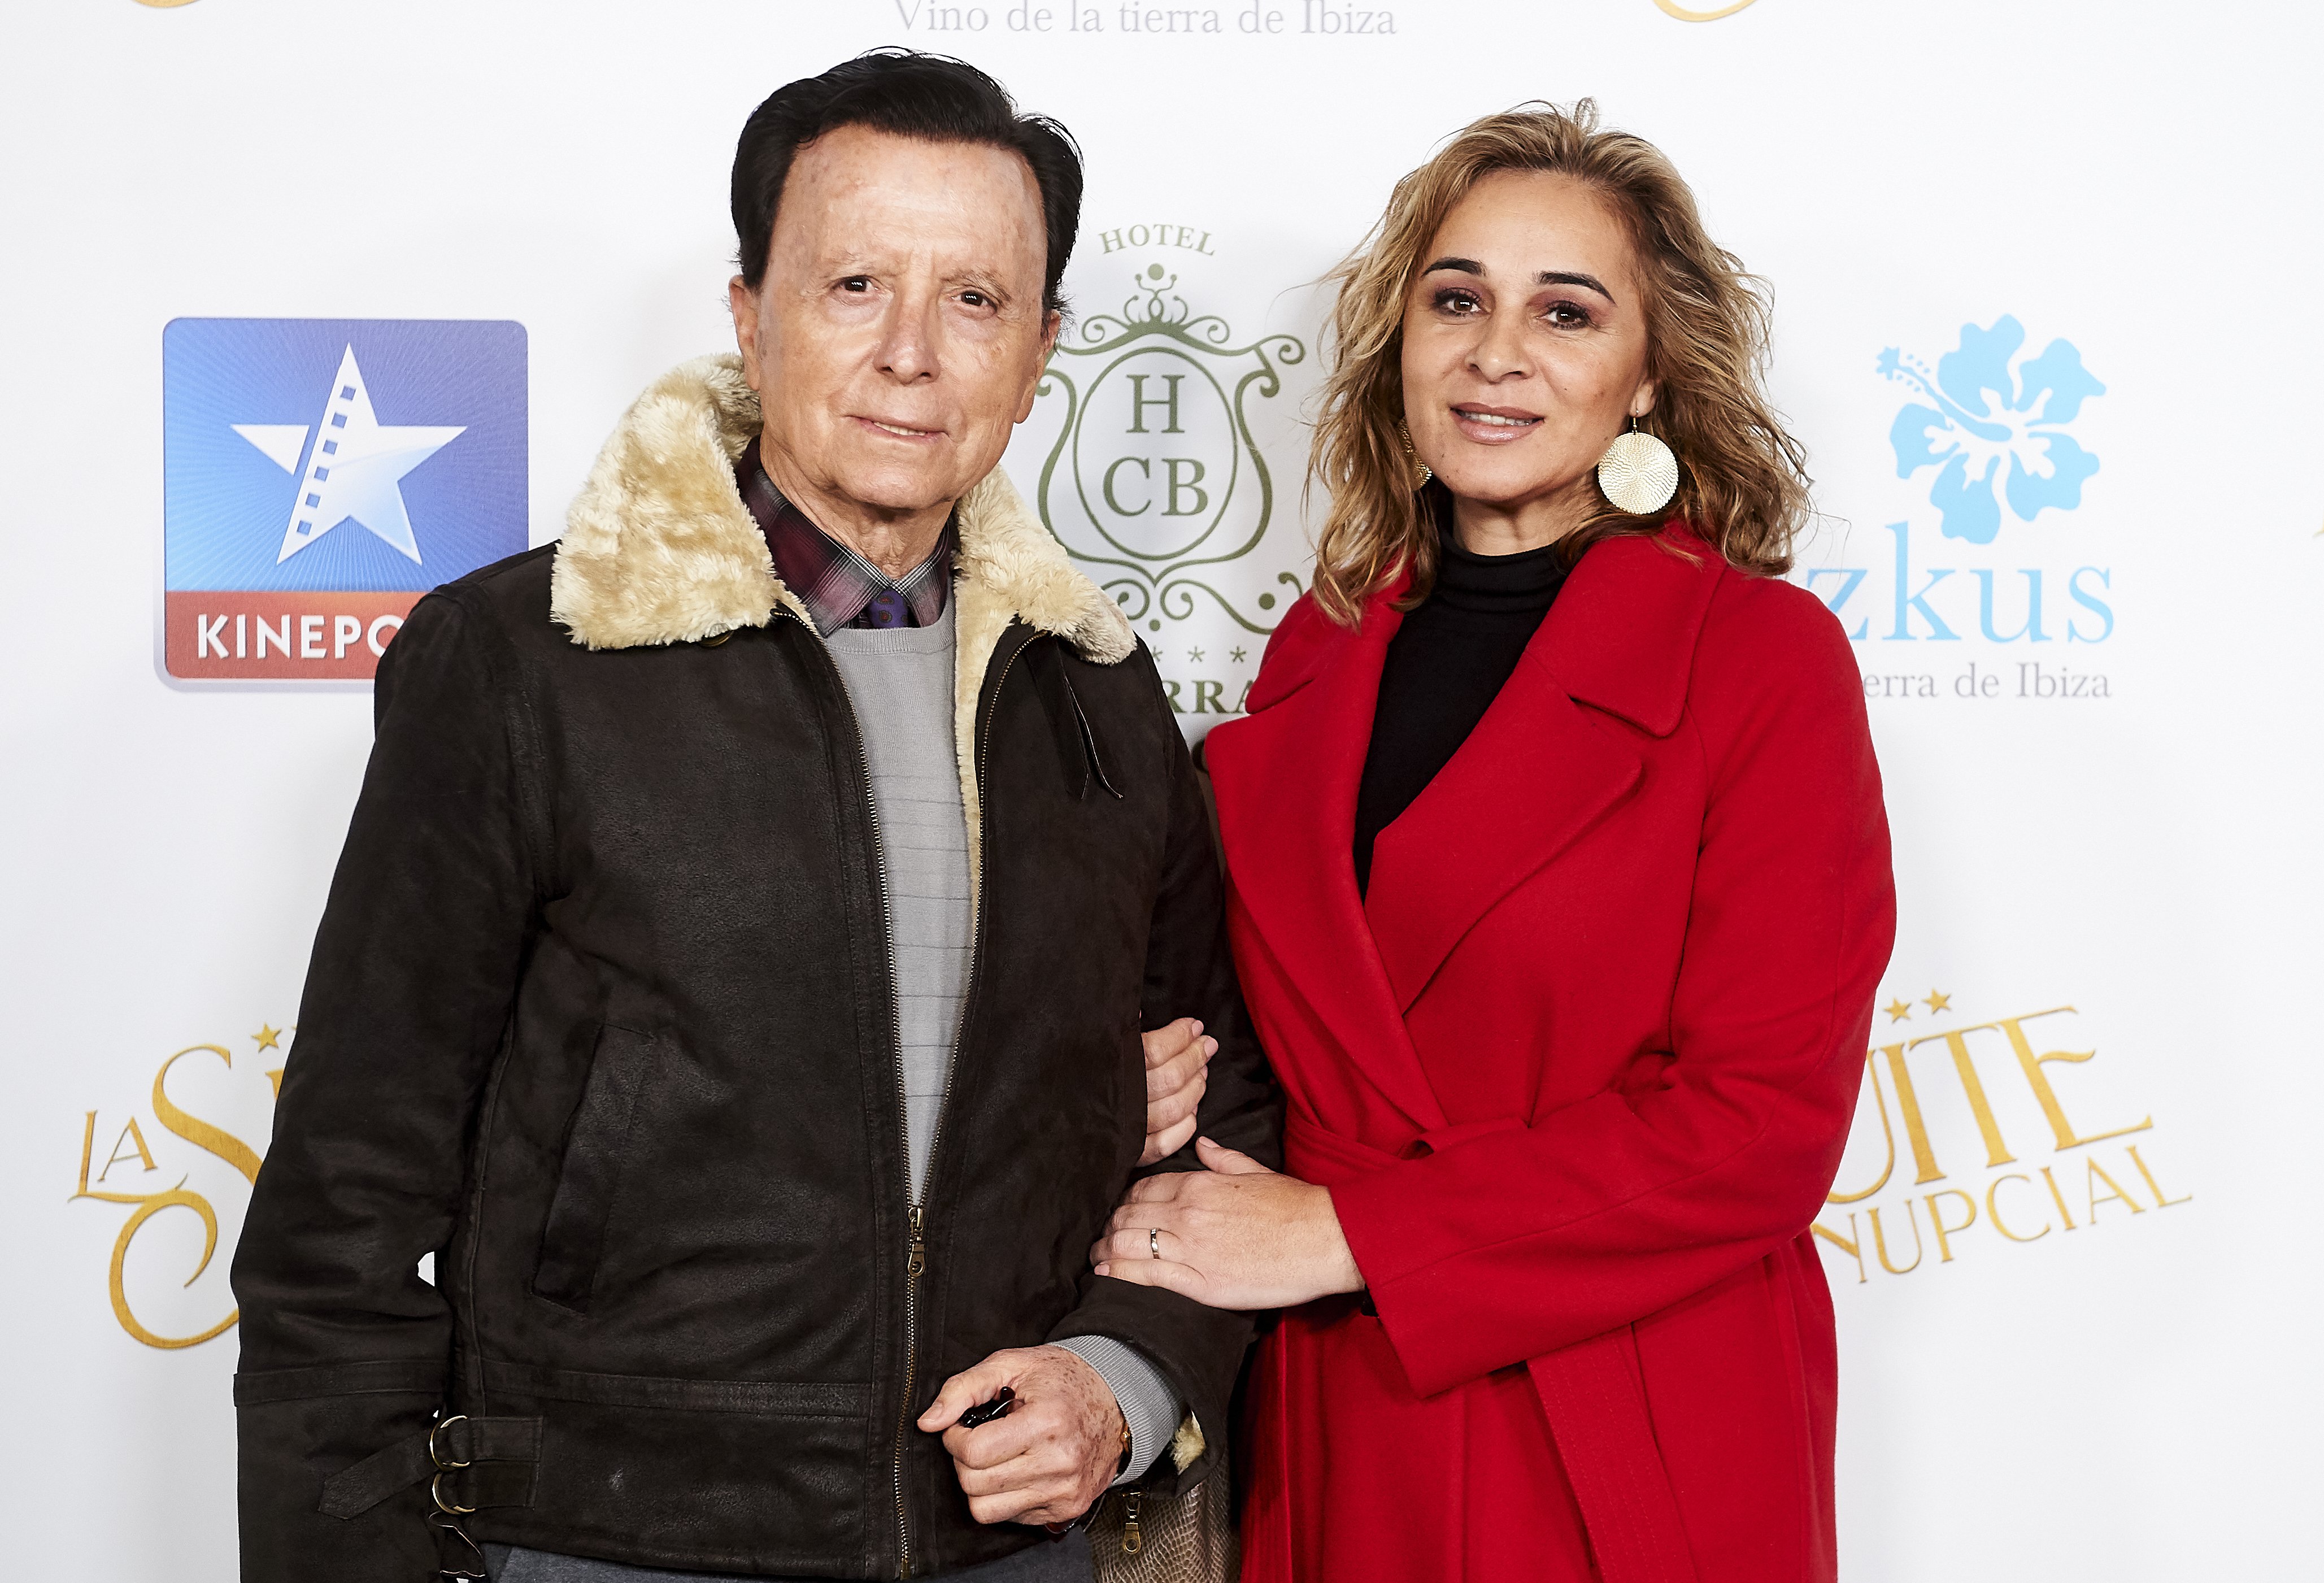 José Ortega Cano y Ana Maria Aldón en el estreno de "La suite nupcial", Madrid, enero de 2020 | Foto: GettyImages